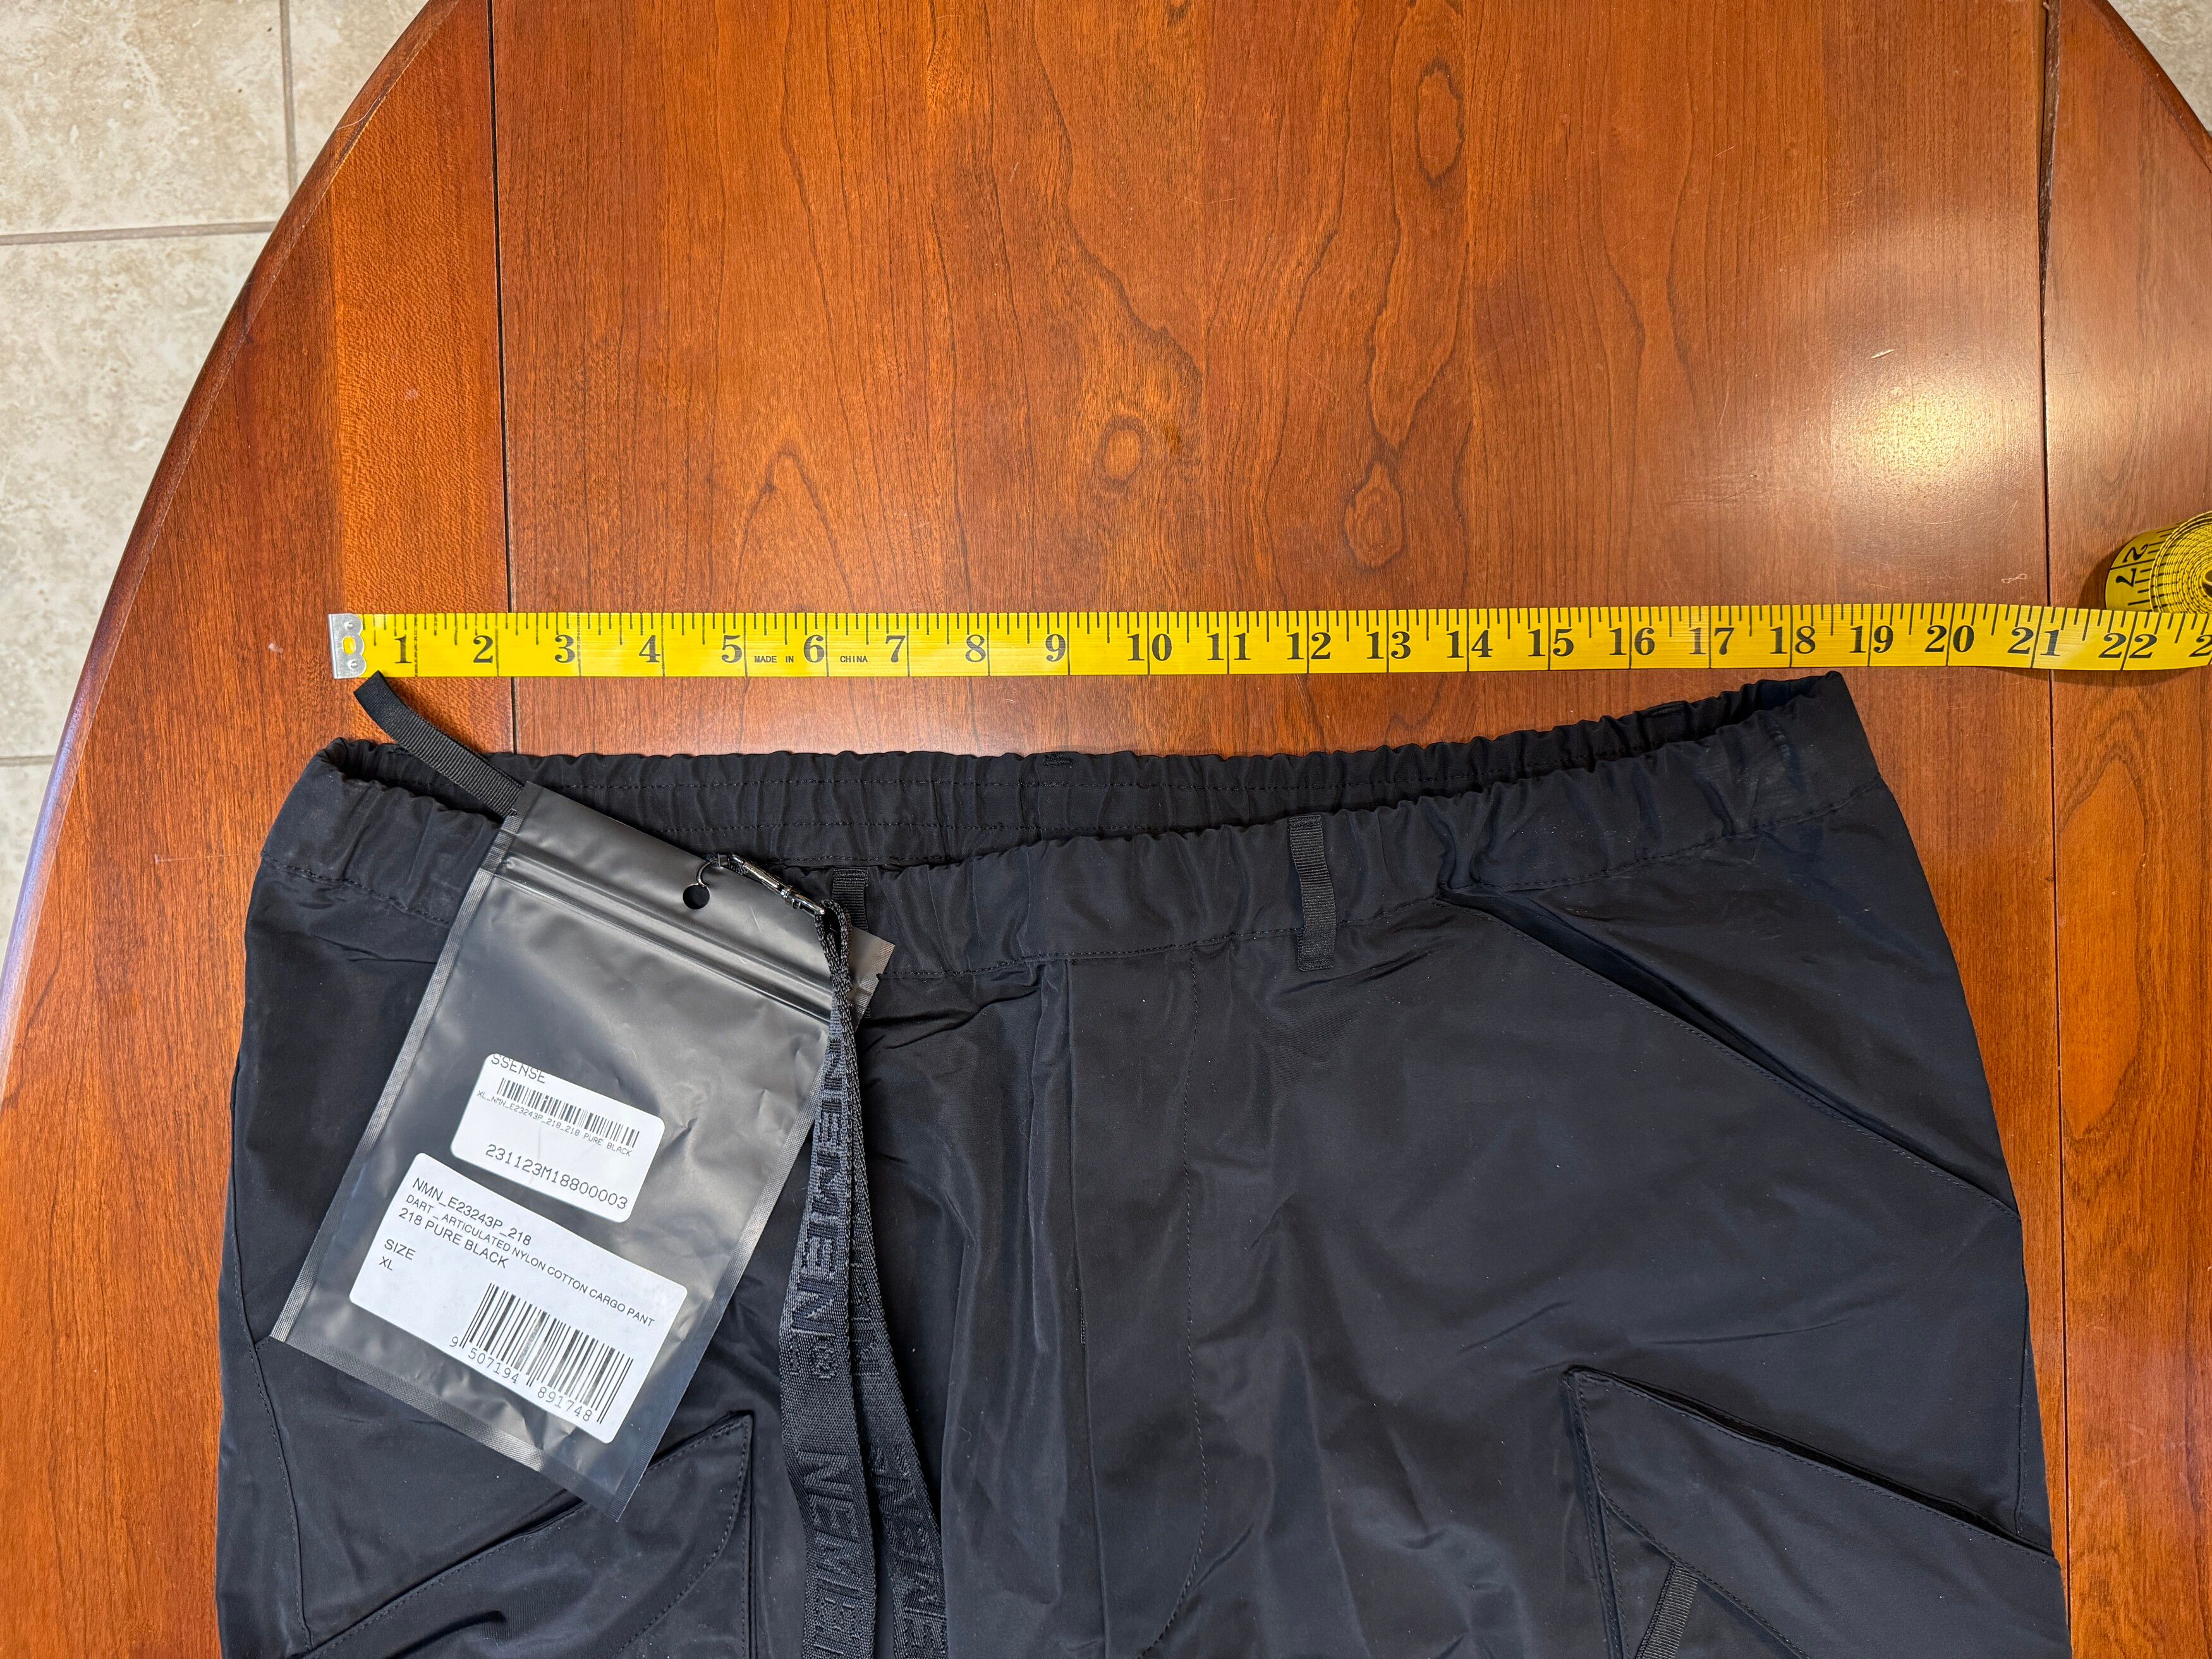 Nemen Articulated Dart Cargo Pants - Black S / Black